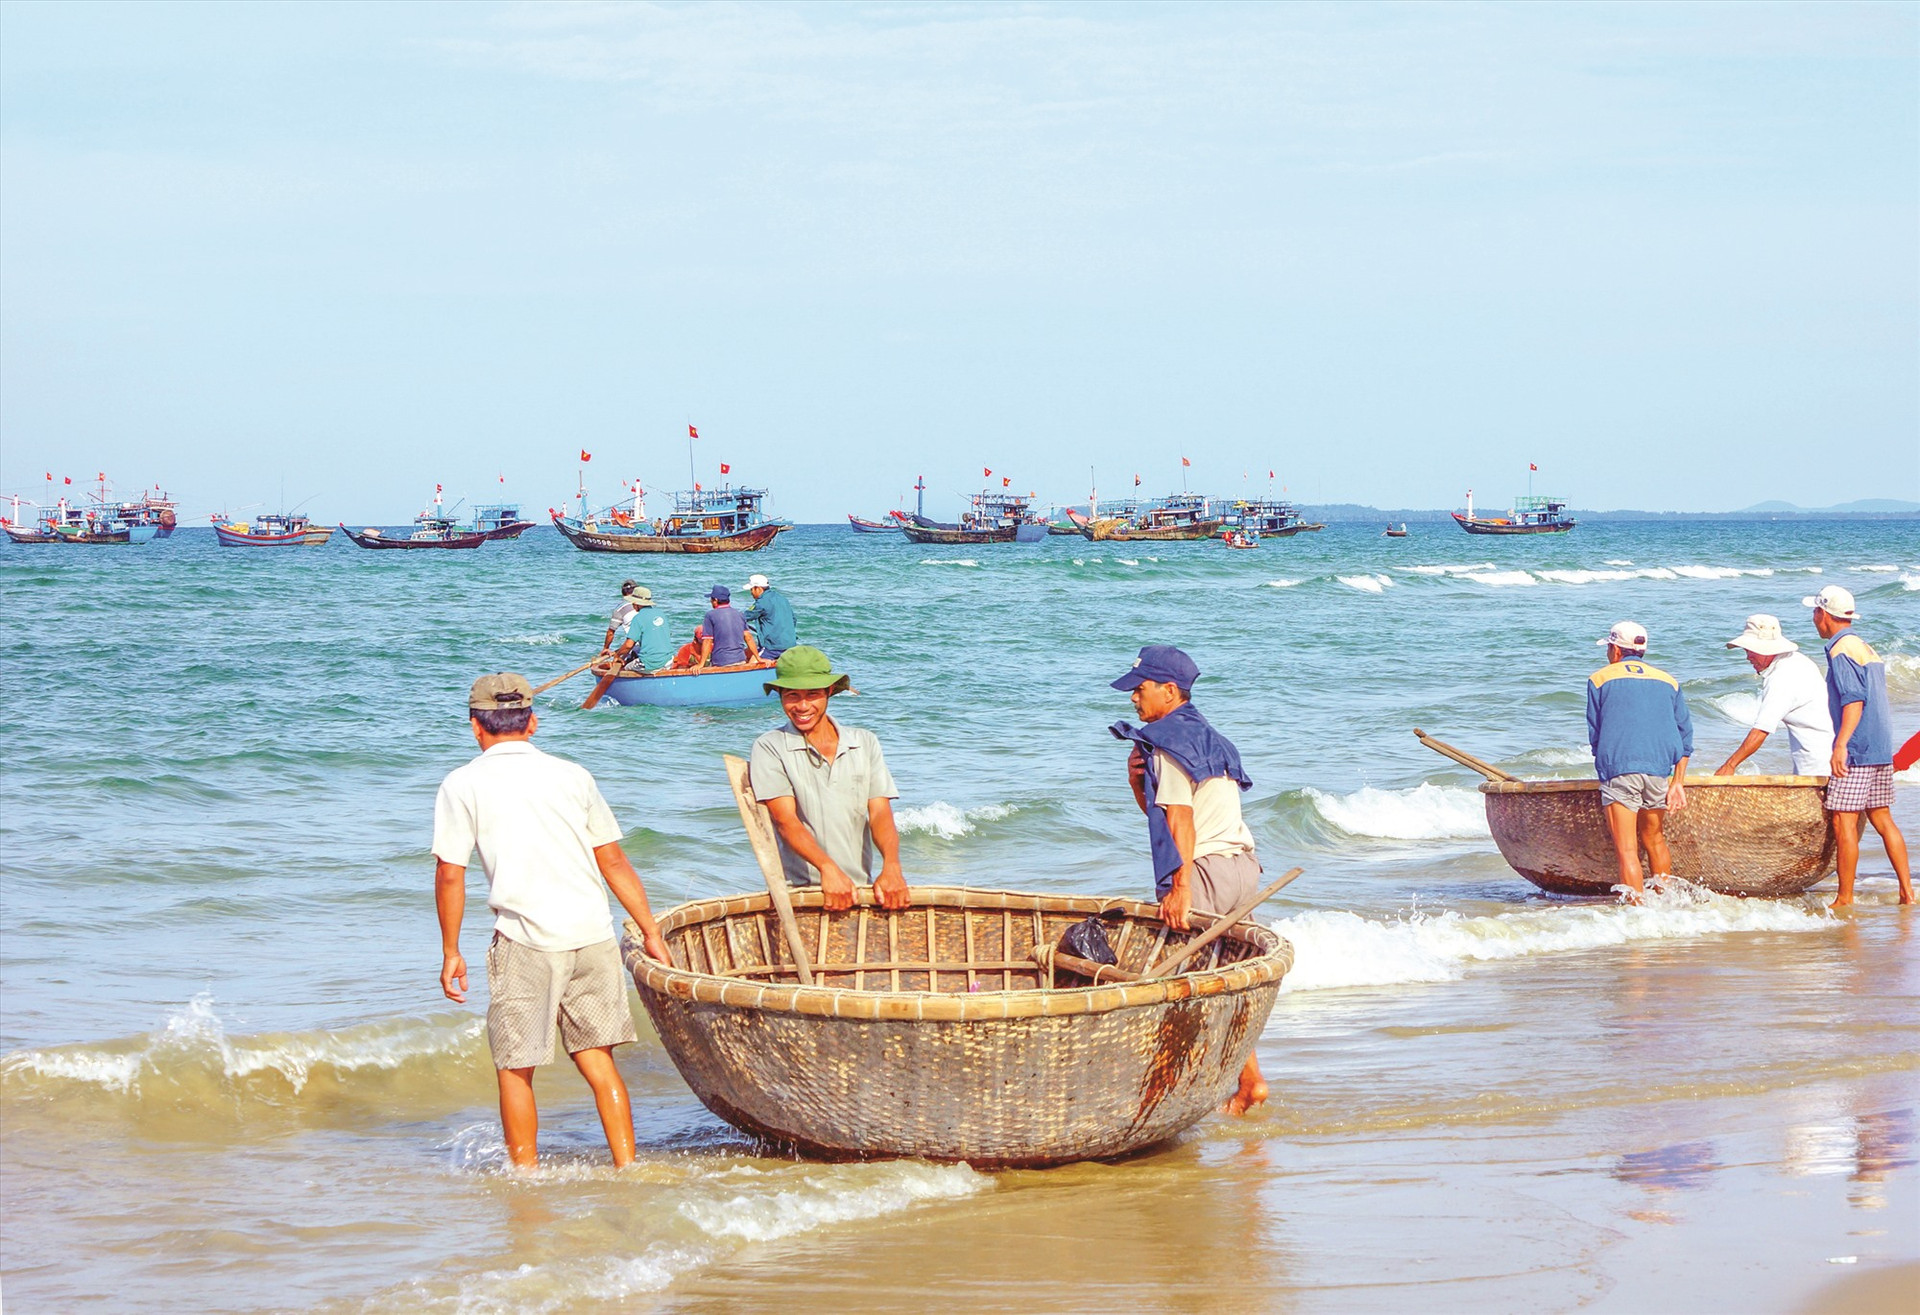 Quảng Nam cần huy động ngư dân khai thác hải sản ven bờ tham gia đồng quản lý, phát triển bền vững nghề cá. Ảnh: PHƯƠNG THẢO